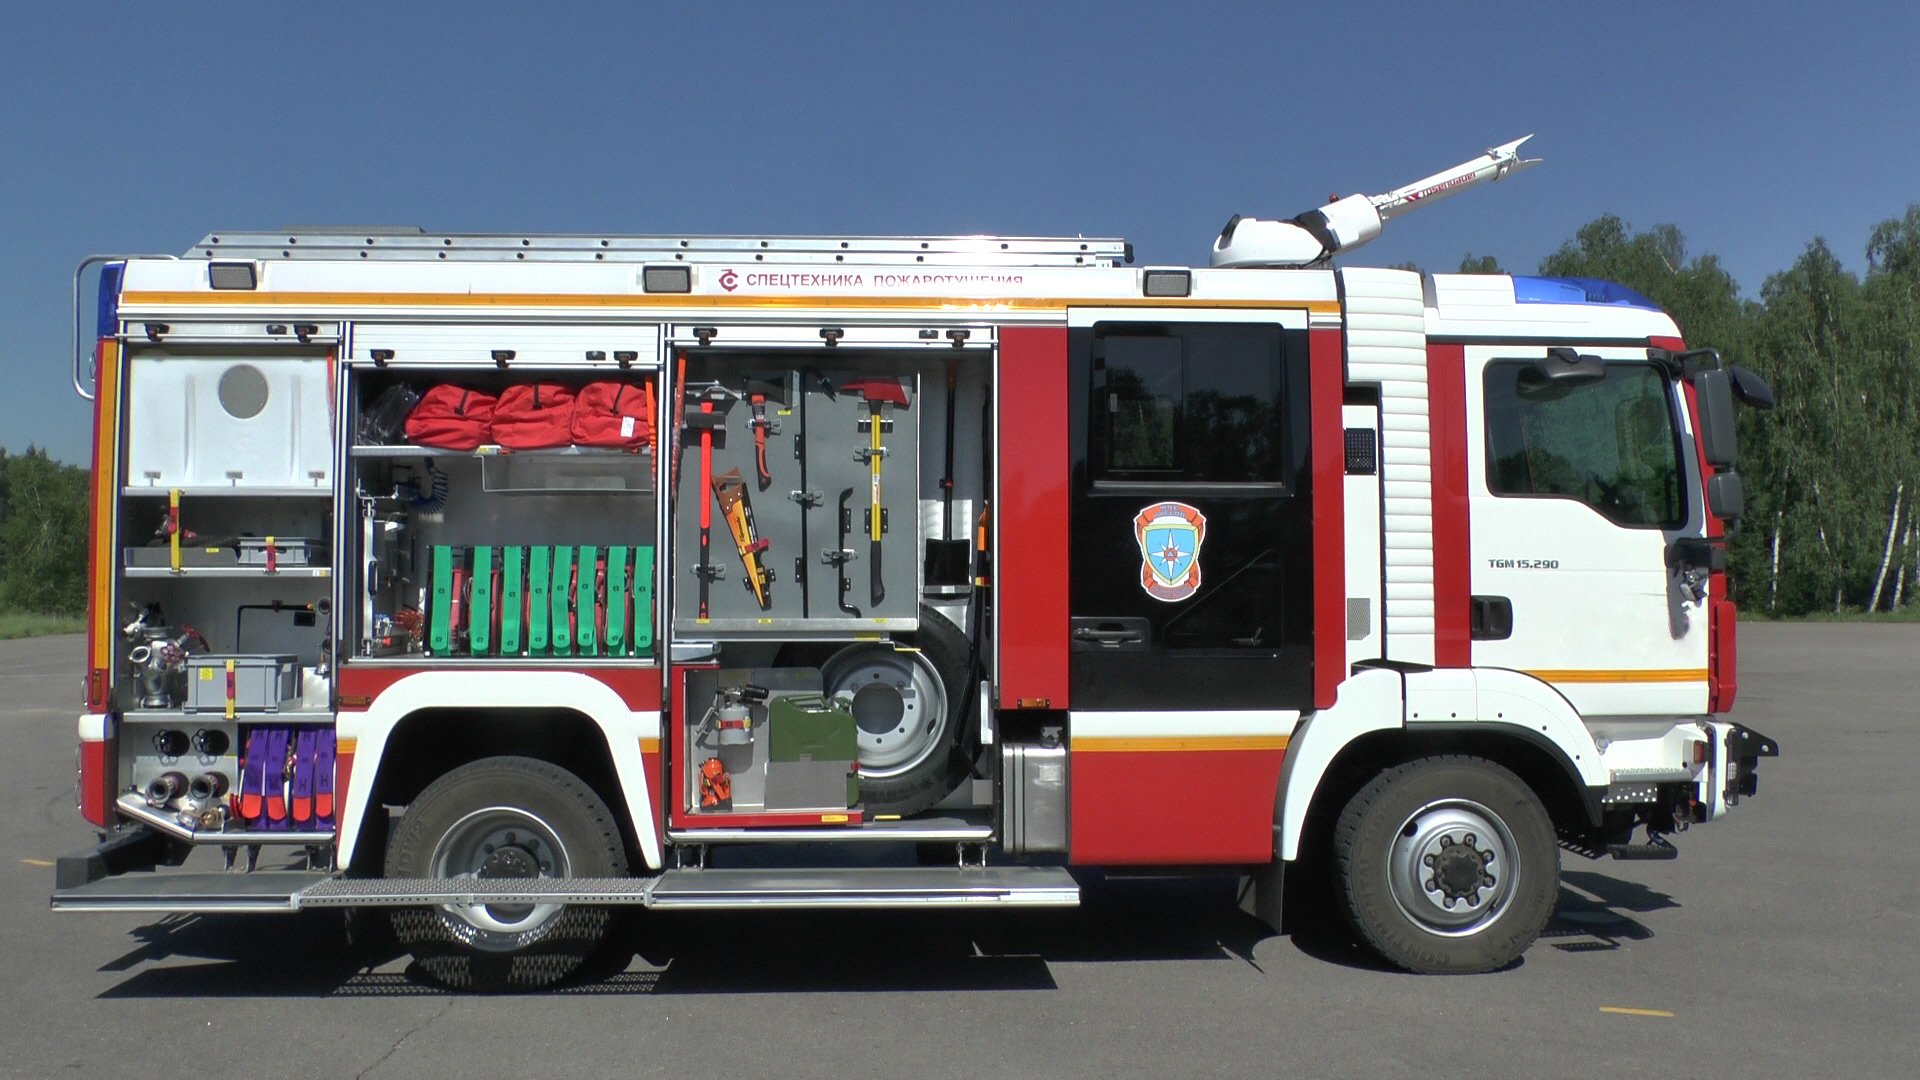 Специальный пожарно технический автомобиль. Автоцистерна пожарная АЦ 2,0-40/2 на шасси Isuzu nqr75p. Man TGM АЦ 3,2-40/4. Розенбауэр КАМАЗ АЦ 3,2 -40/4. АЦ 3.2 40/4 КАМАЗ ПТВ.